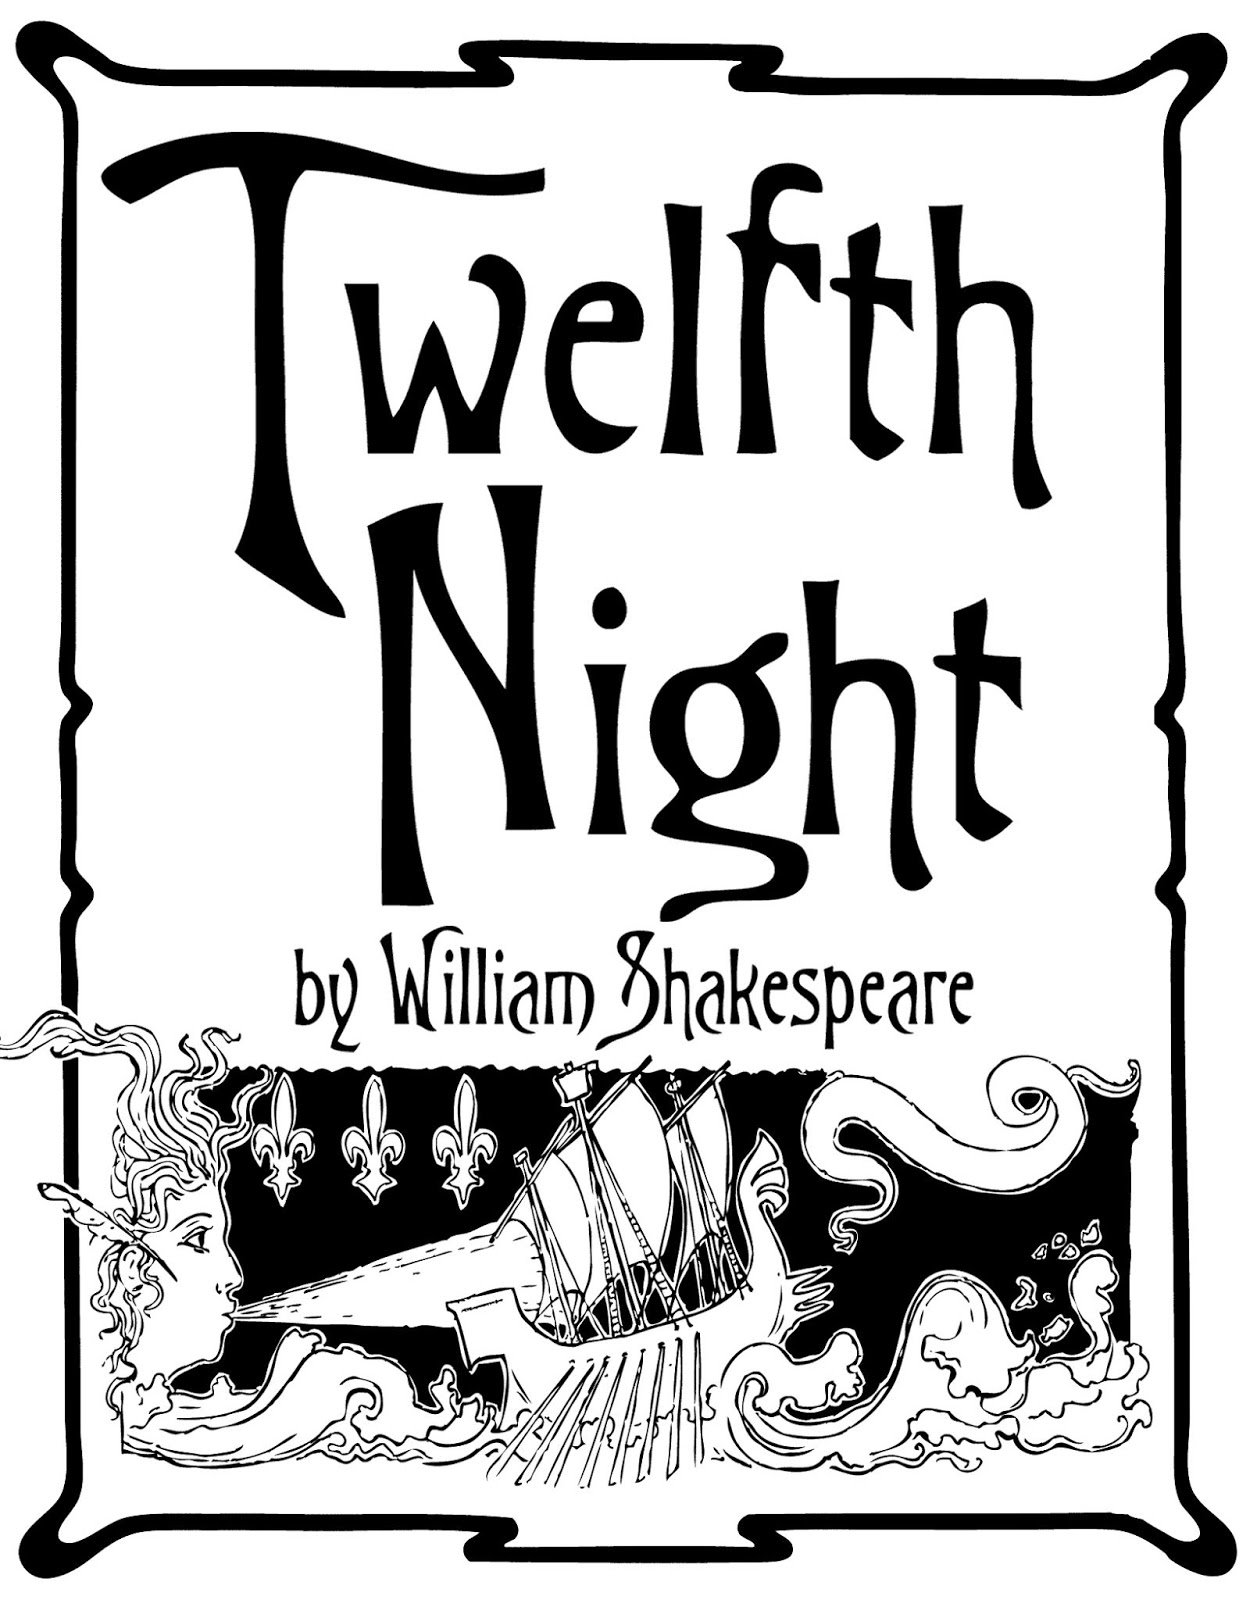 12 ночи на английском. Уильям Шекспир двенадцатая ночь. Двенадцатая ночь Уильям Шекспир книга. Двенадцатая ночь Уильям Шекспир иллюстрации. Произведение Шекспира 12 ночь.